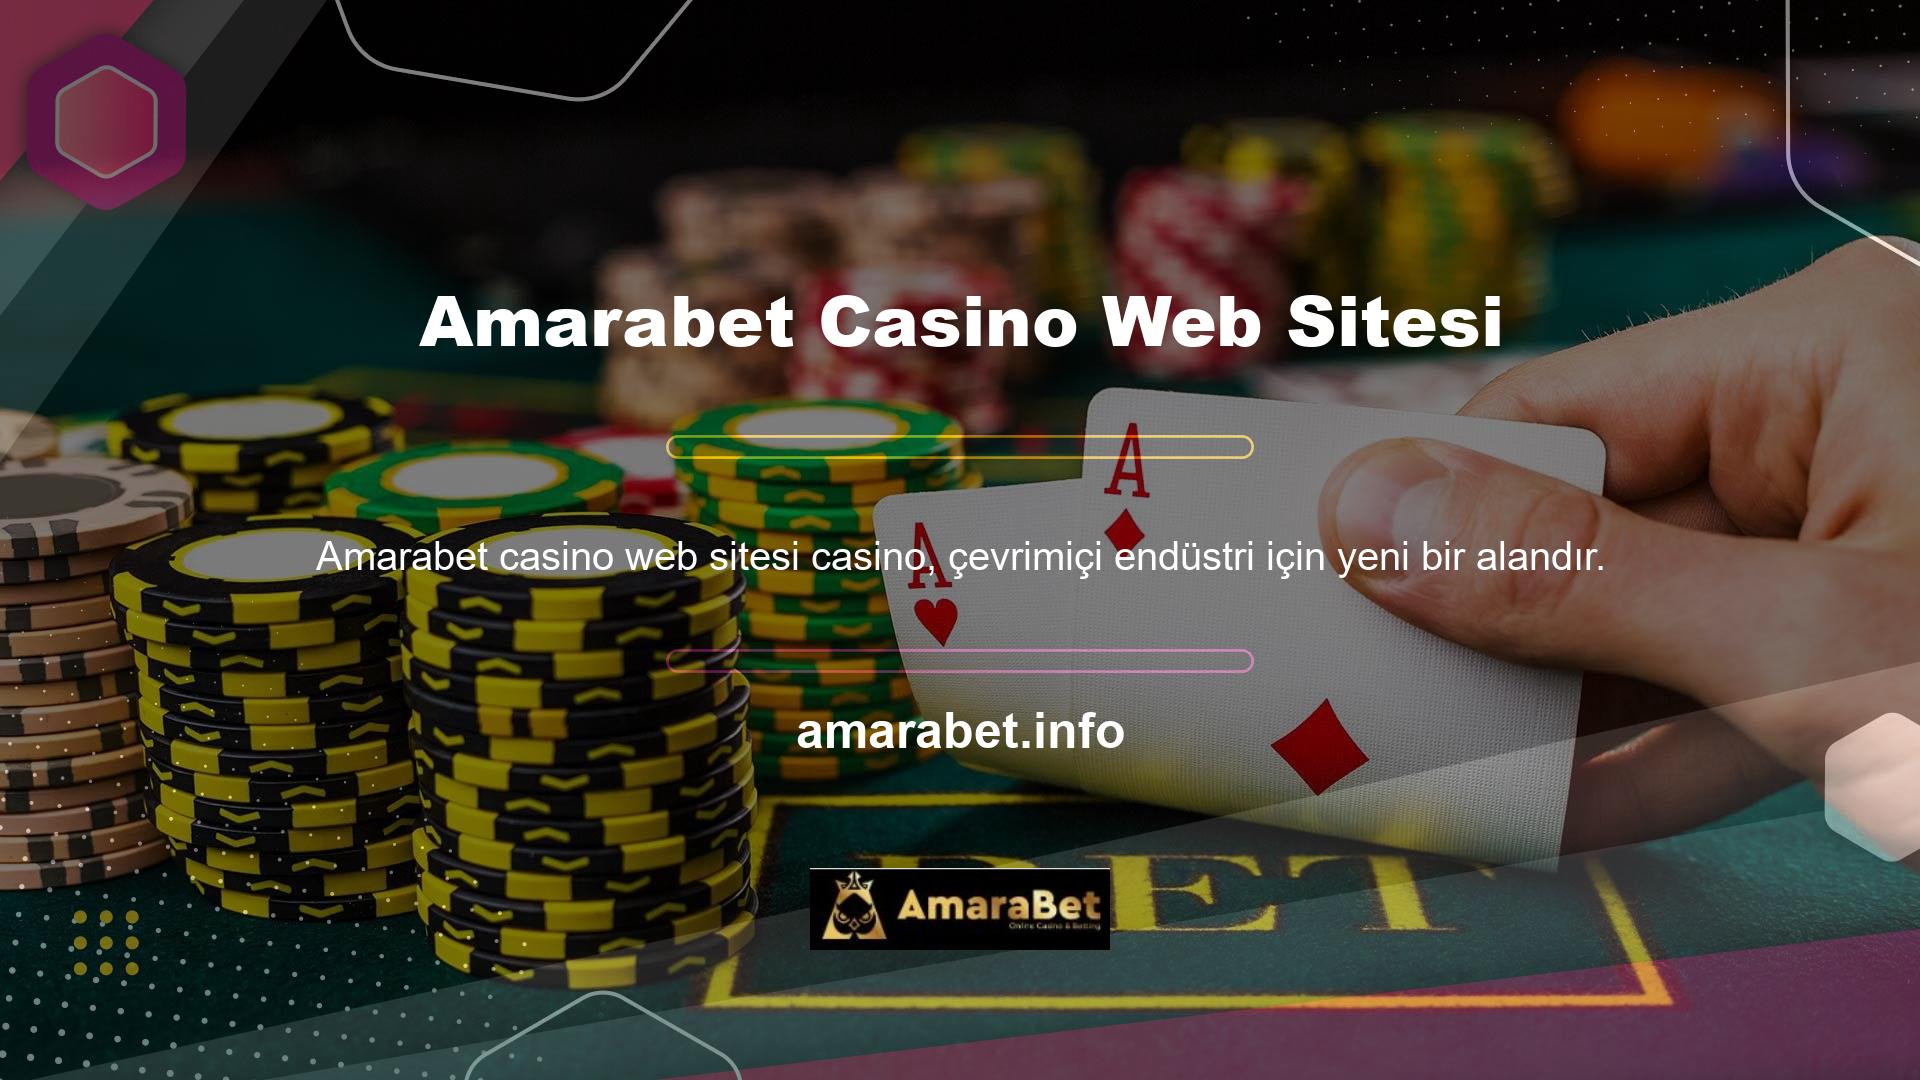 Amarabet Casino sitesi devletten resmi yasal casino lisansına sahiptir ve bahis müşterilerine istikrarlı bir oyun ortamı sağlar